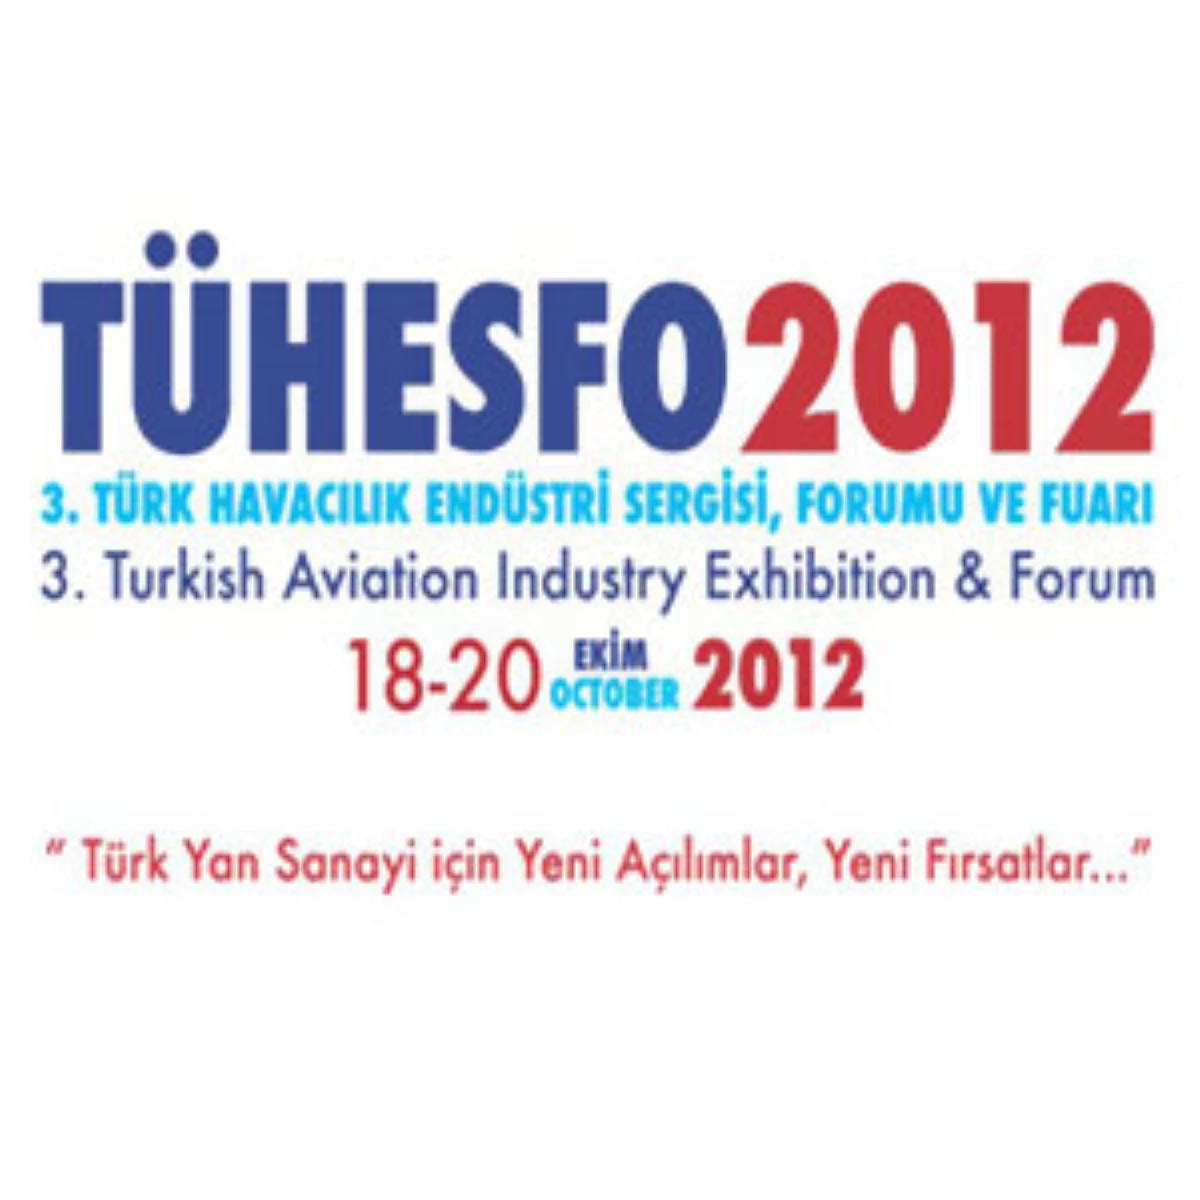 "Tühesfo 2012" İstanbul\'da Gerçekleştirilecek